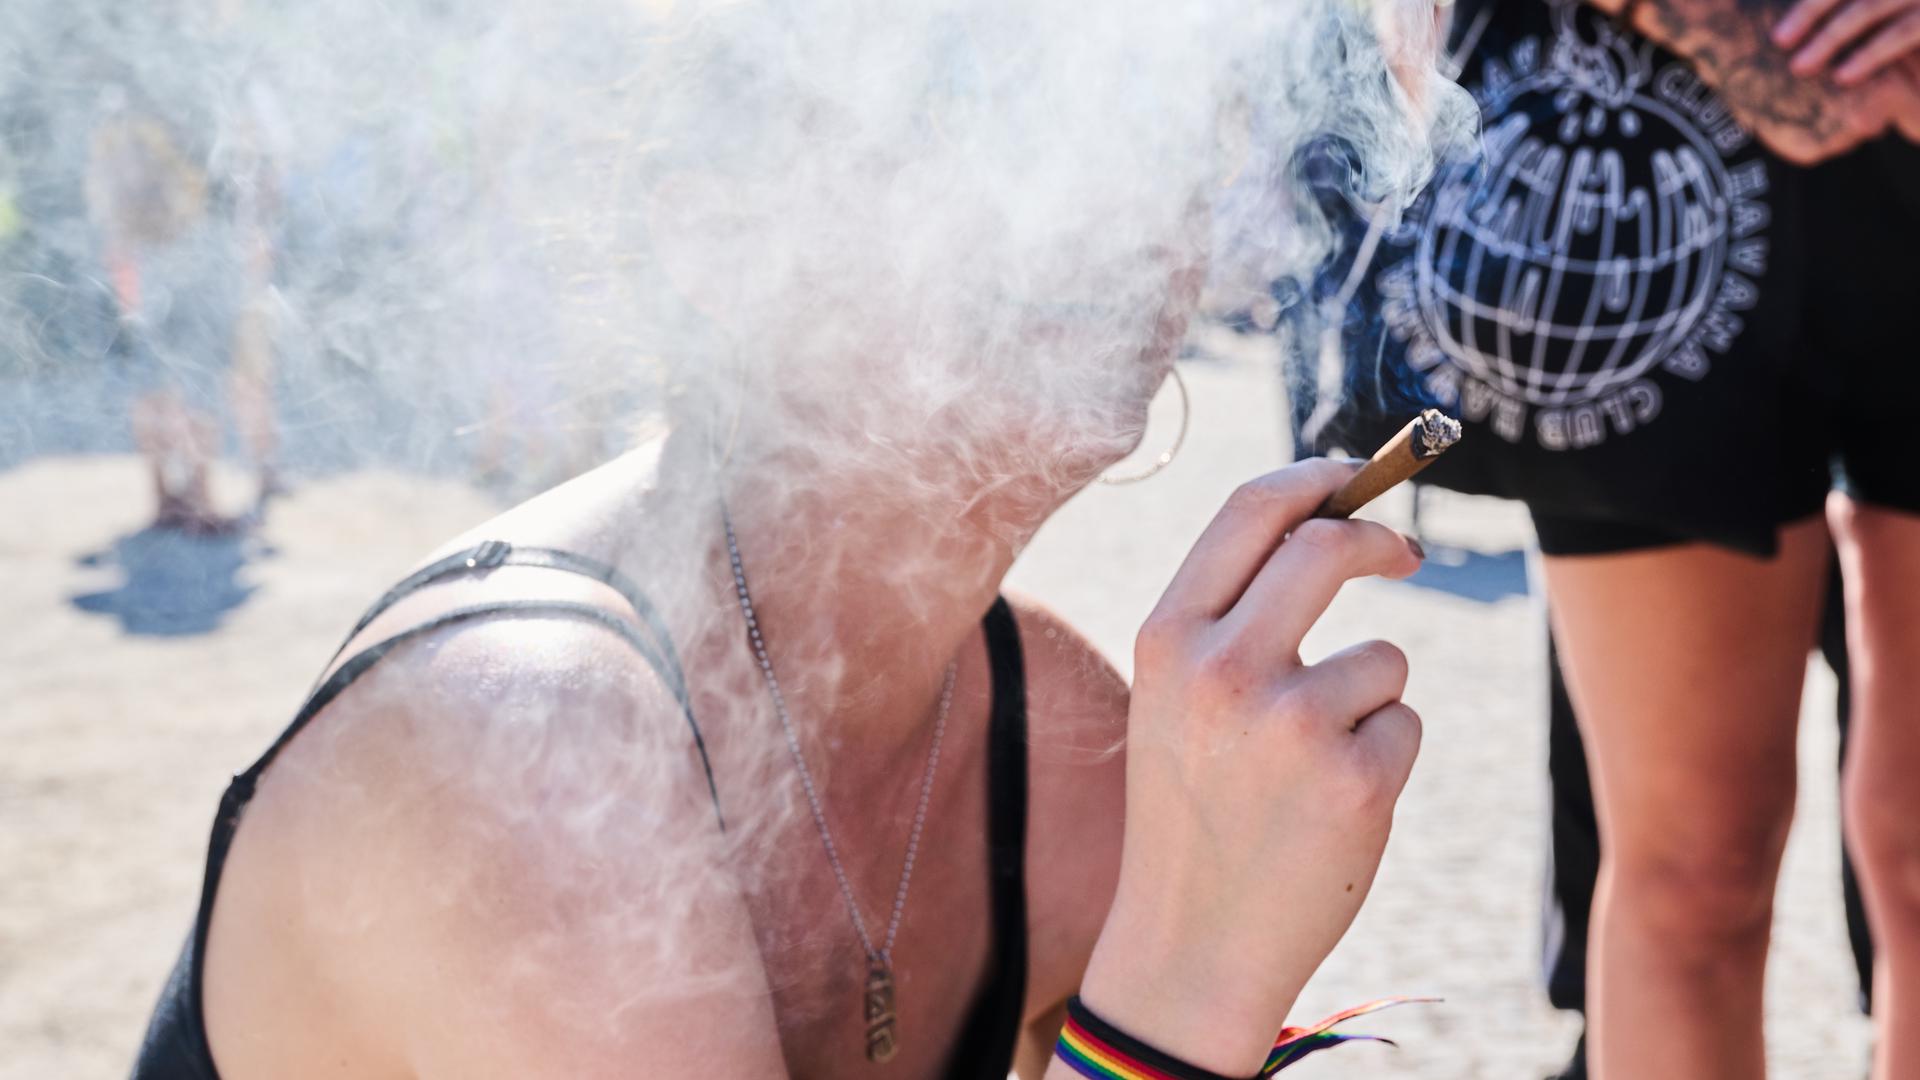 Eine Demonstrantin raucht einen Joint bei der Hanfparade. Die Hanfparade ist laut Angaben der Veranstalter die größte und traditionsreichste Demonstration für Cannabis in Deutschland. (zu dpa: Bundes-Drogenbeauftragte für Sechs-Gramm-Grenze bei Cannabis) +++ dpa-Bildfunk +++